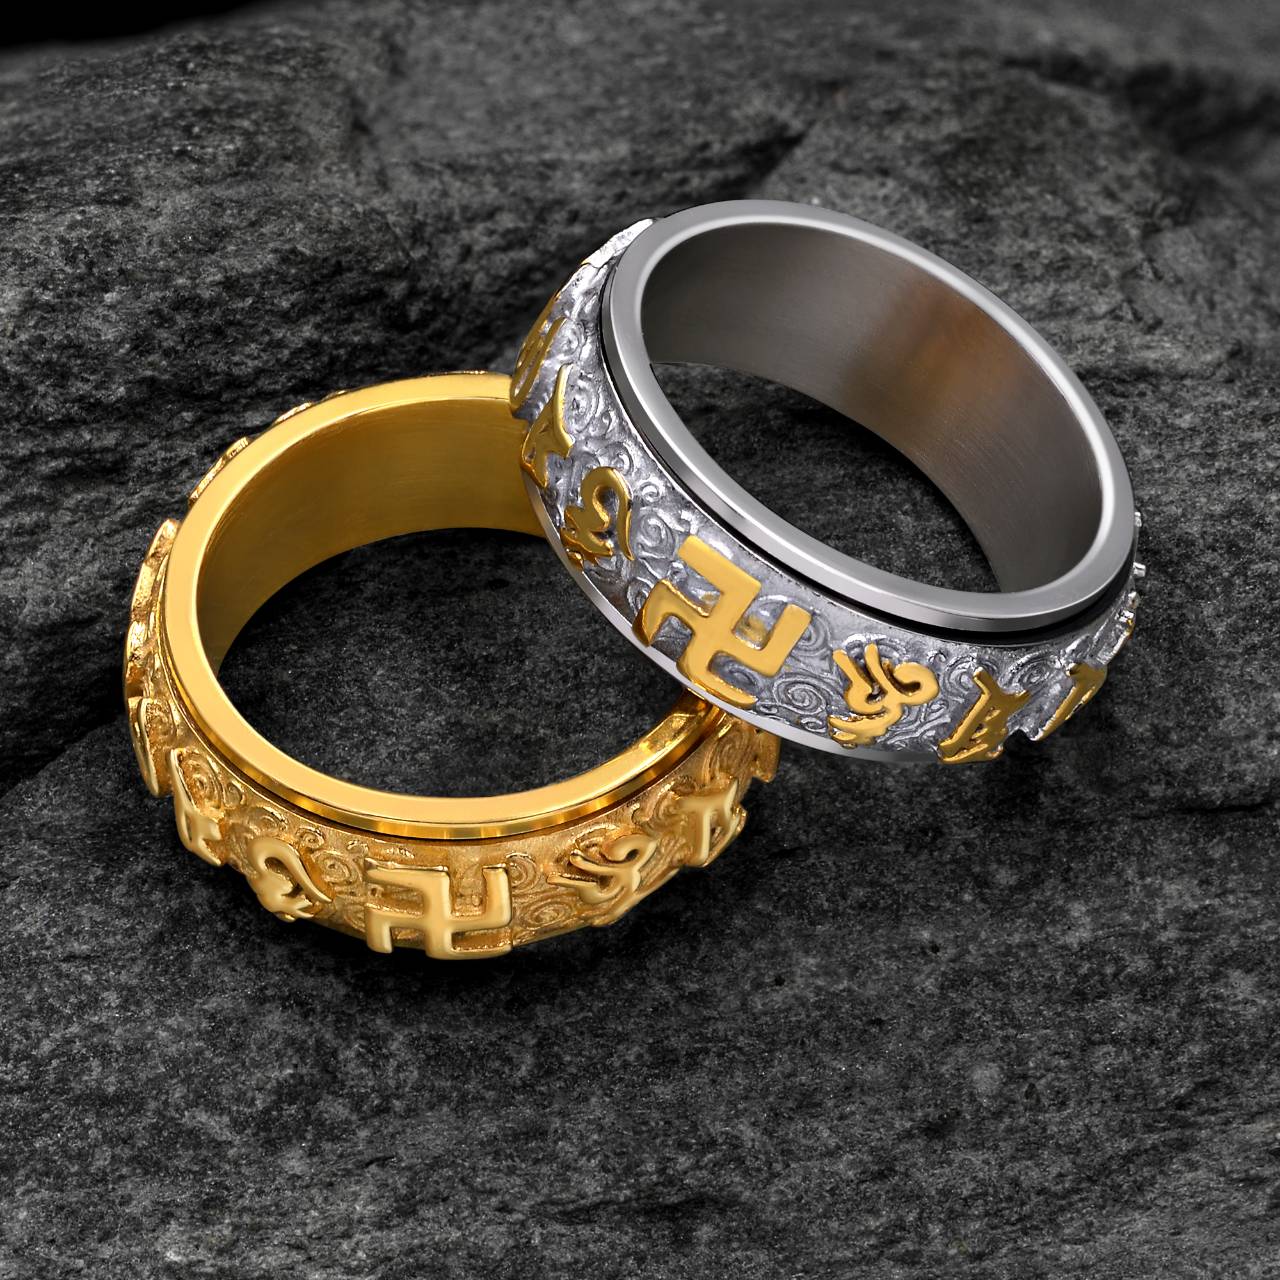 แหวนหทัยสูตร แหวนบูชาพระโพธิสัตว์ แหวนหทัยสูตร แหวนหฟทัยสูตร บทโอม มณี ปัทเม ฮง (ดวงมณีแห่งดอกบัว)